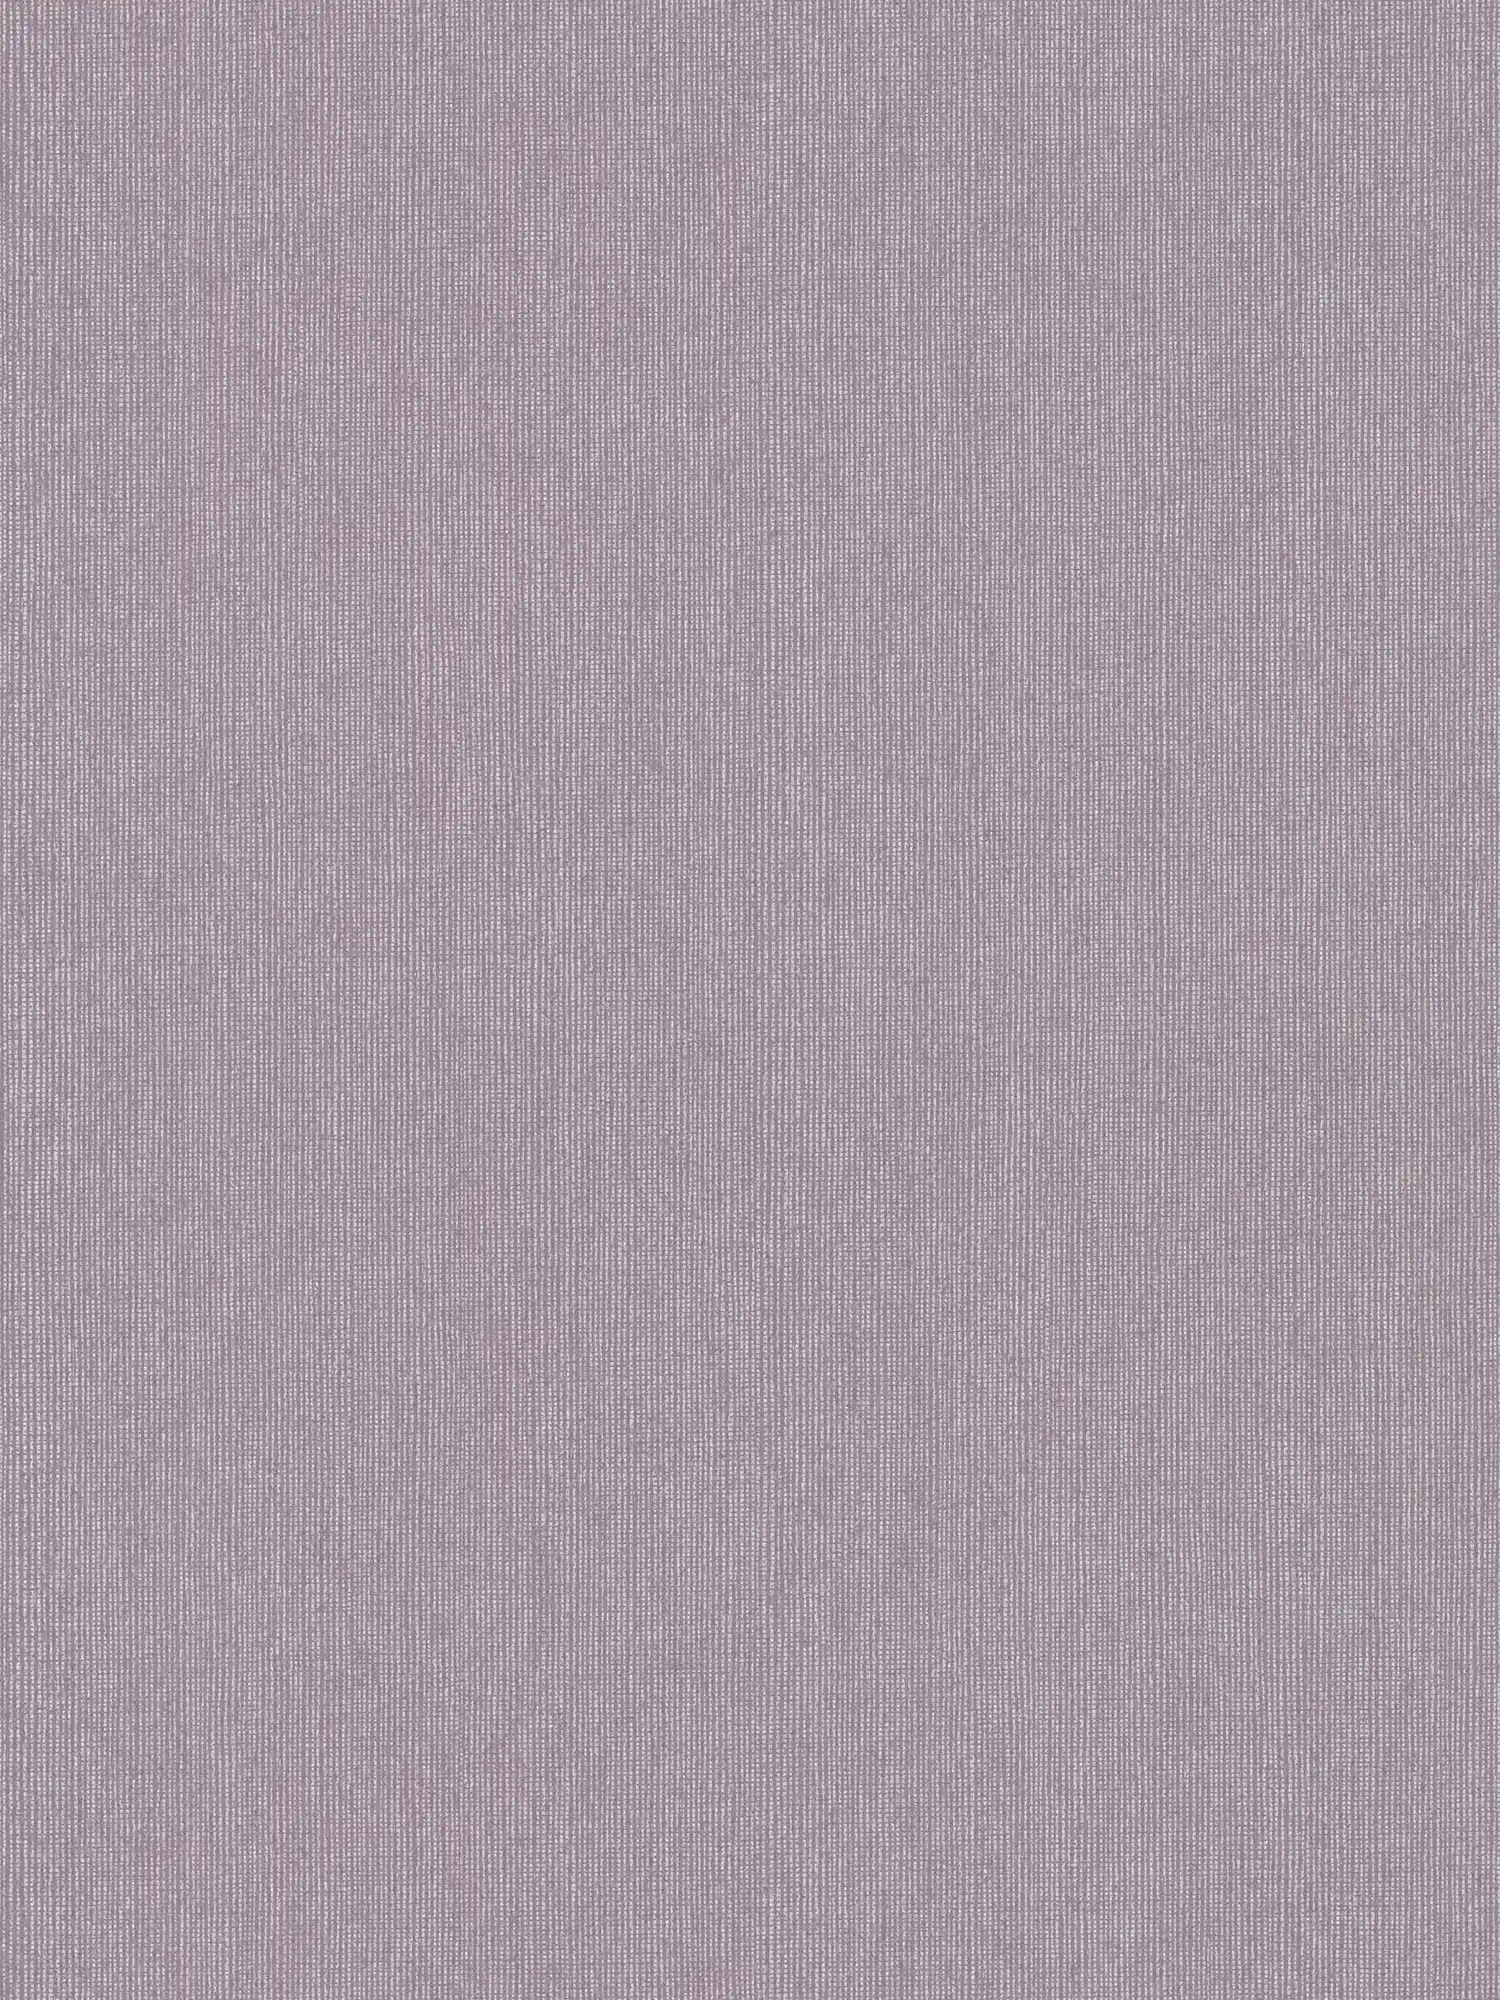 Papier peint brillant avec structure textile & effet chatoyant - violet, gris
